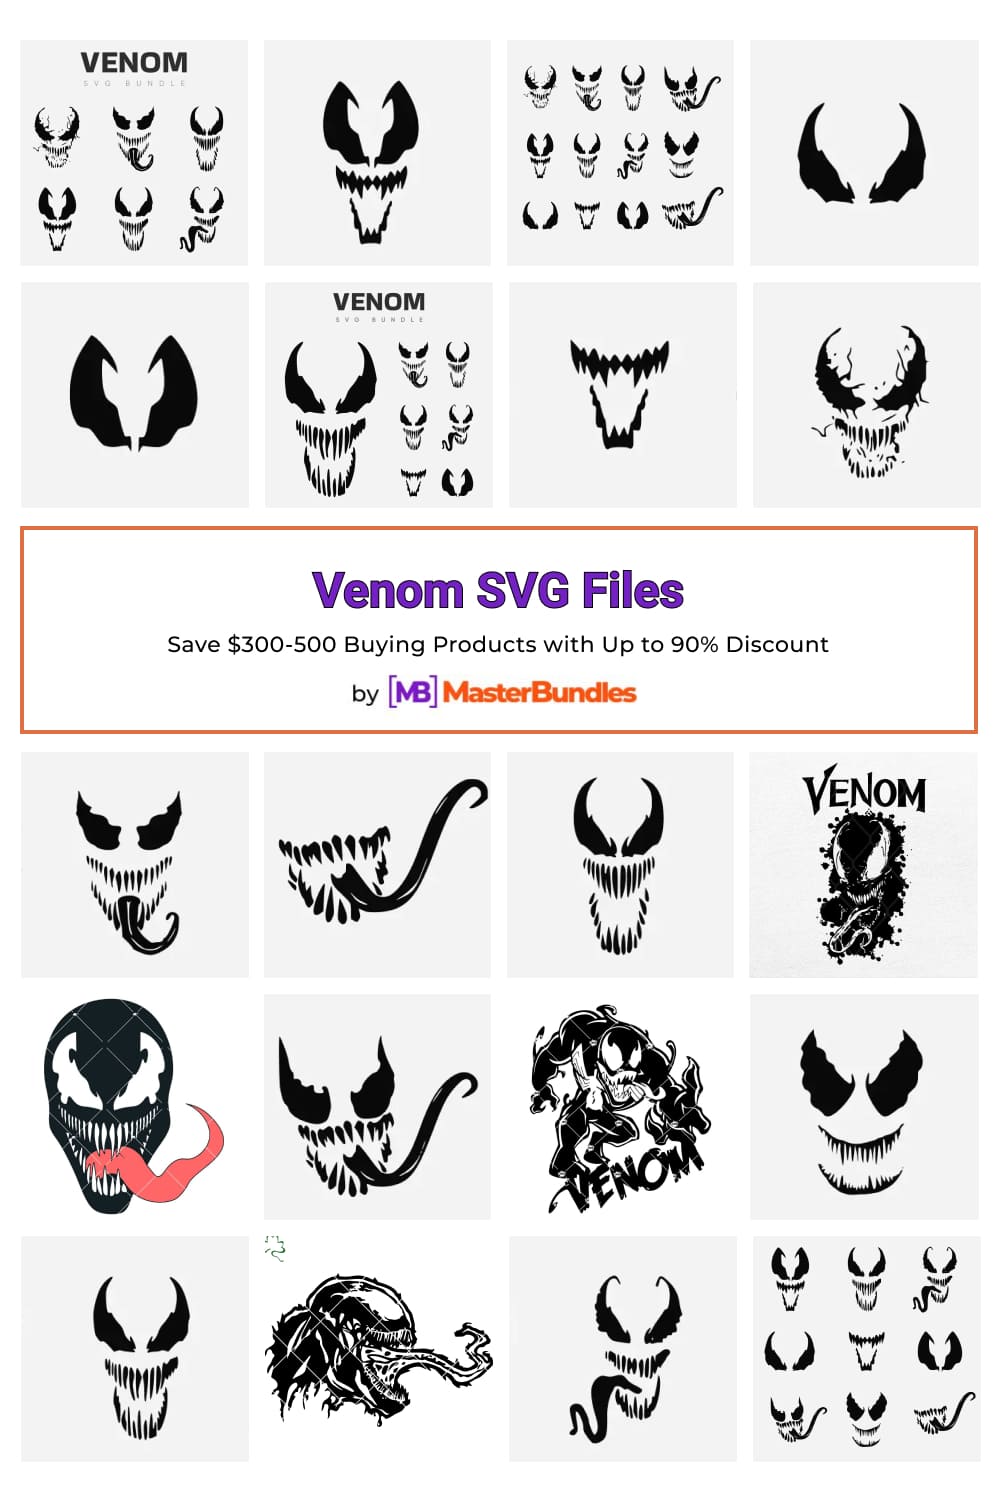 Venom SVG Files for pinterest.